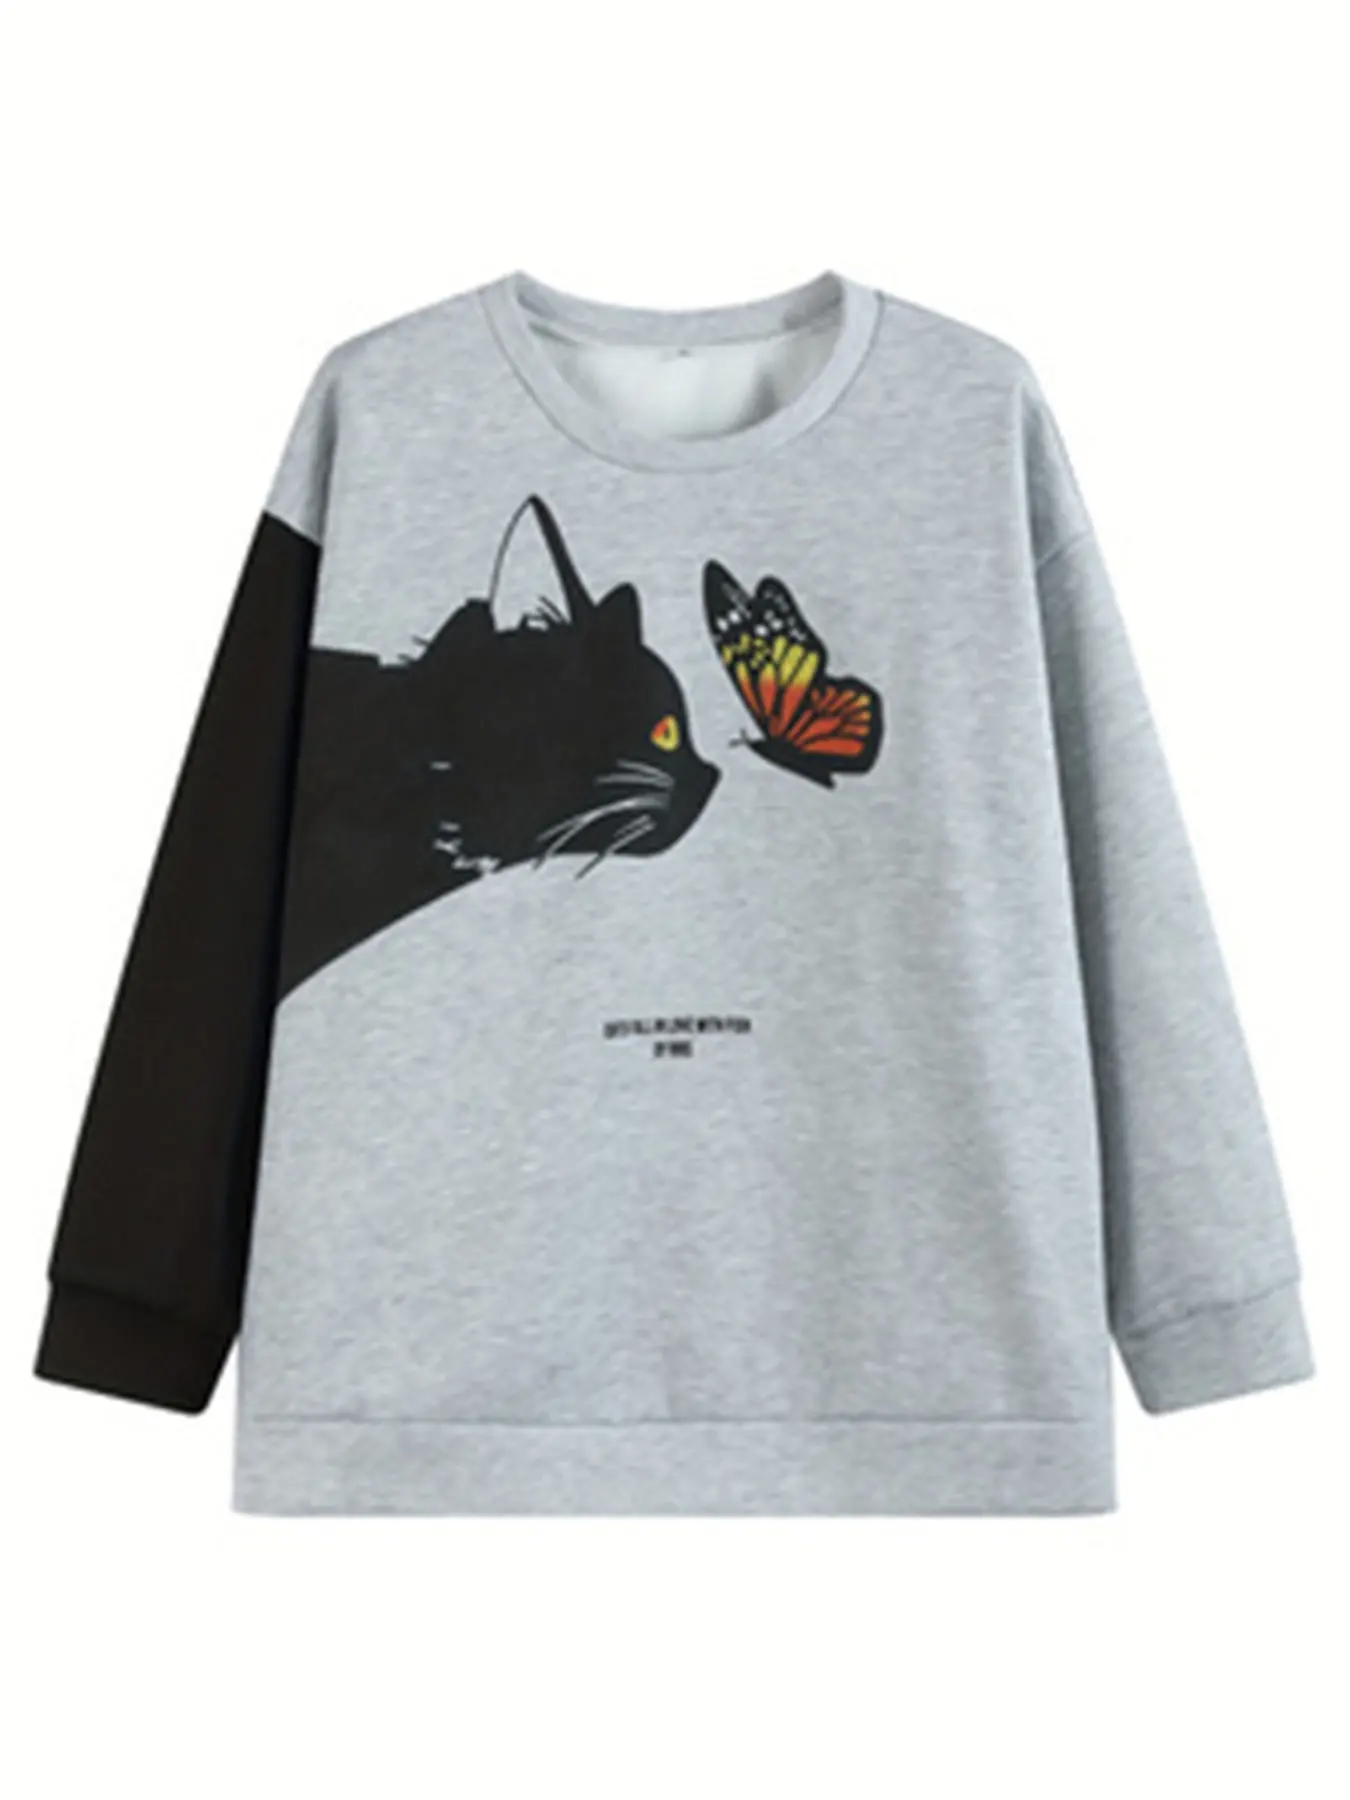 Camisola de manga comprida com gola redonda feminina, com estampa carta e gato e borboleta, tamanho positivo, camisola casual